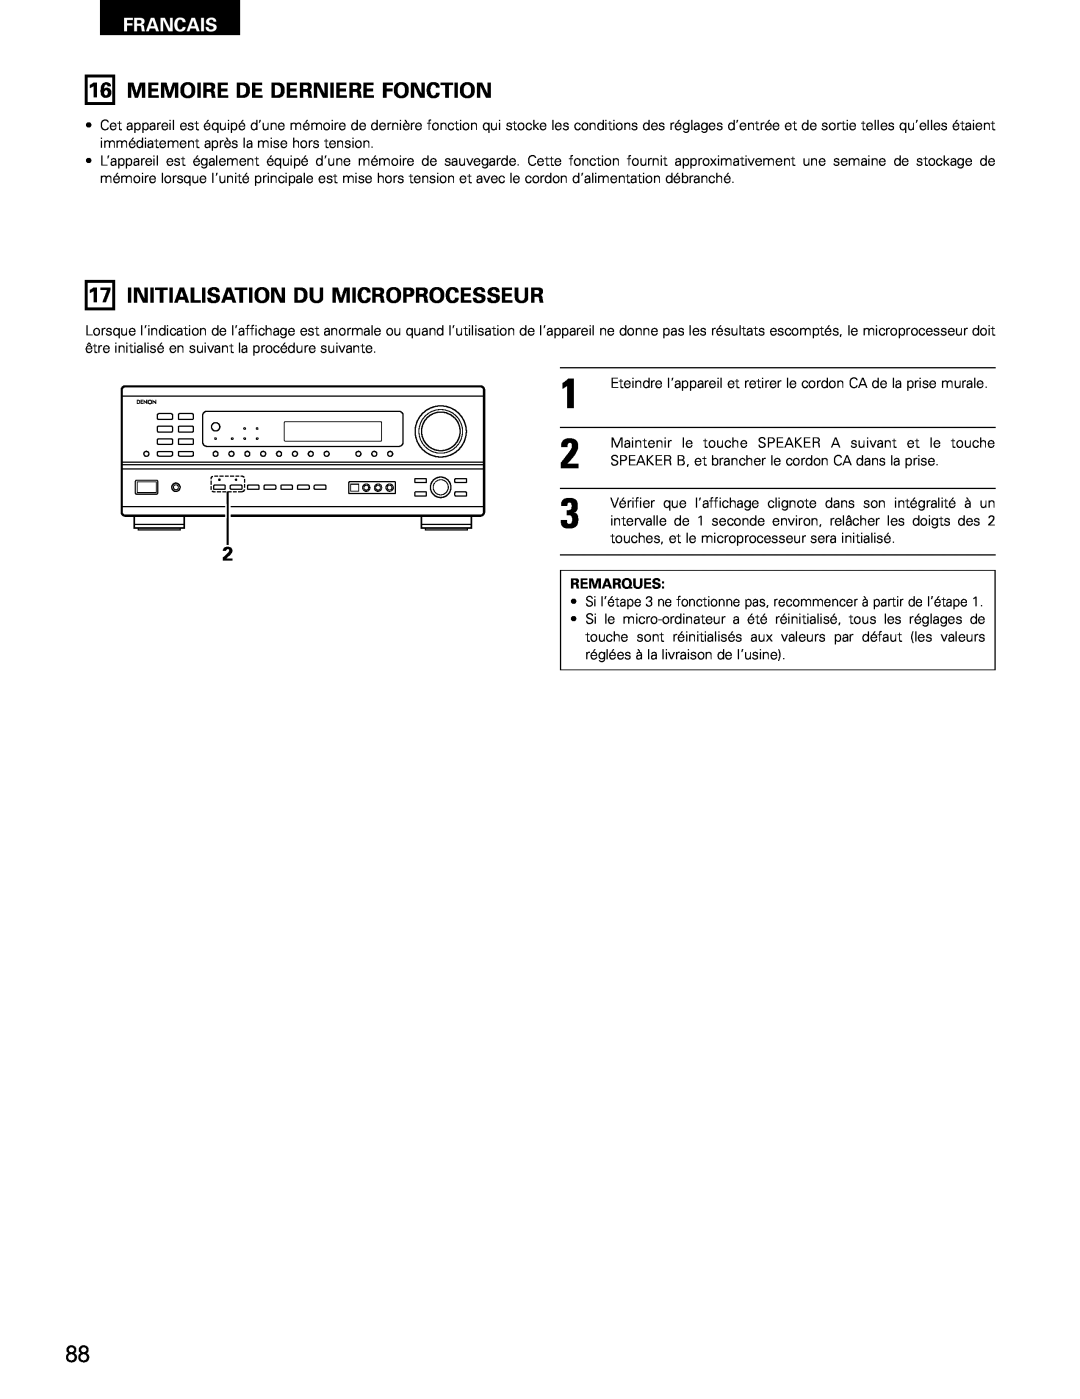 Denon AVR-1802/882 manual 16MEMOIRE DE DERNIERE FONCTION, 17INITIALISATION DU MICROPROCESSEUR, Francais, Remarques 